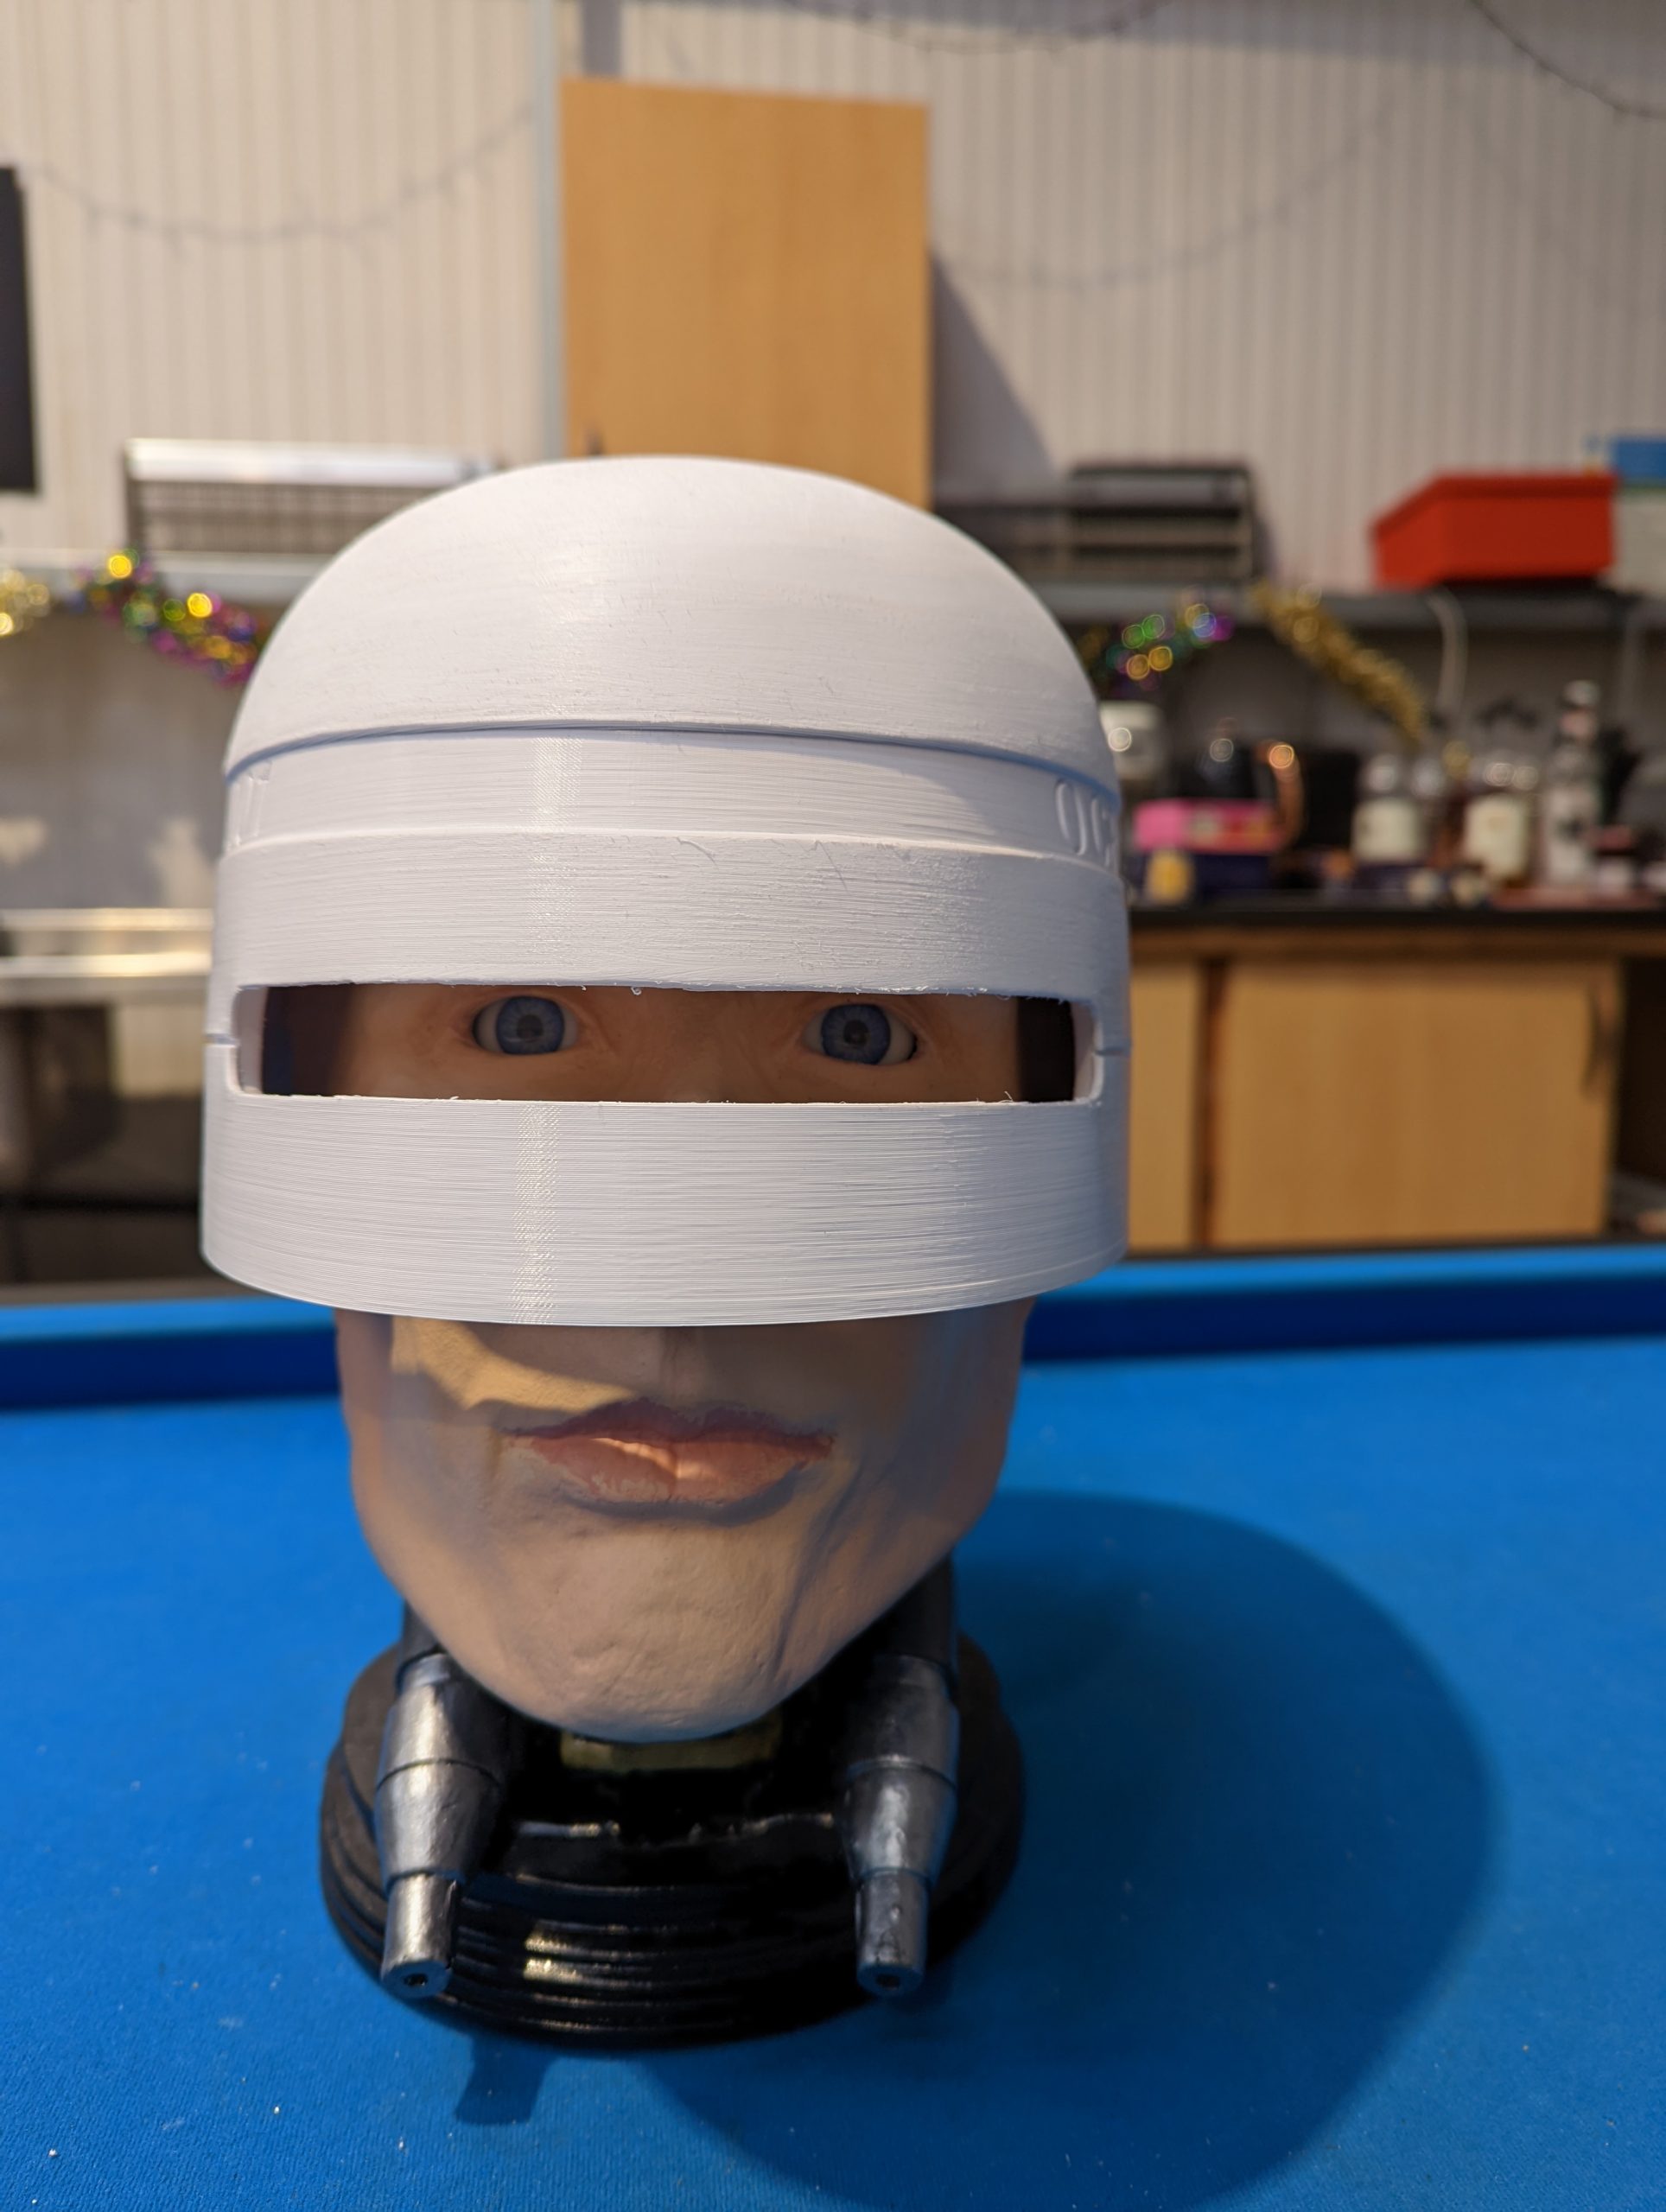 fitting helmet ontop of robocop head